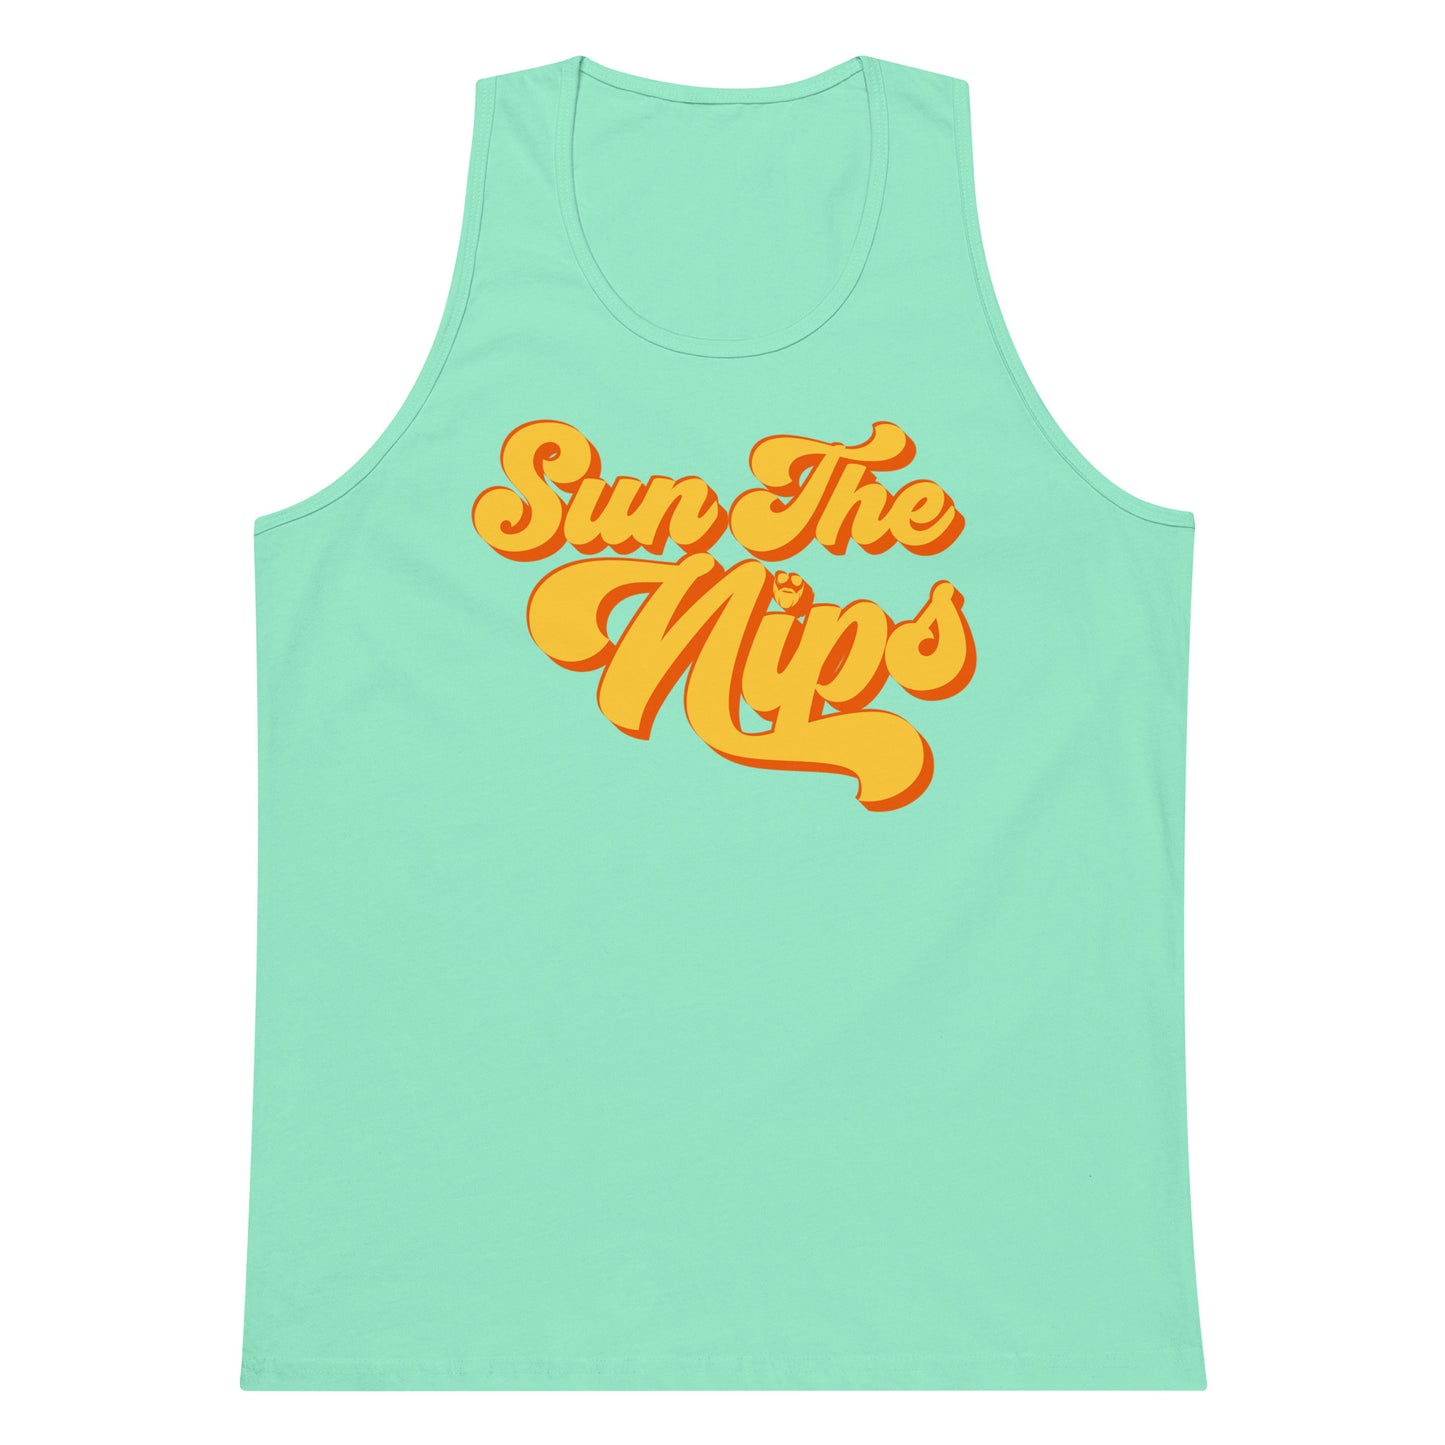 Sun The Nips Premium Tank Top